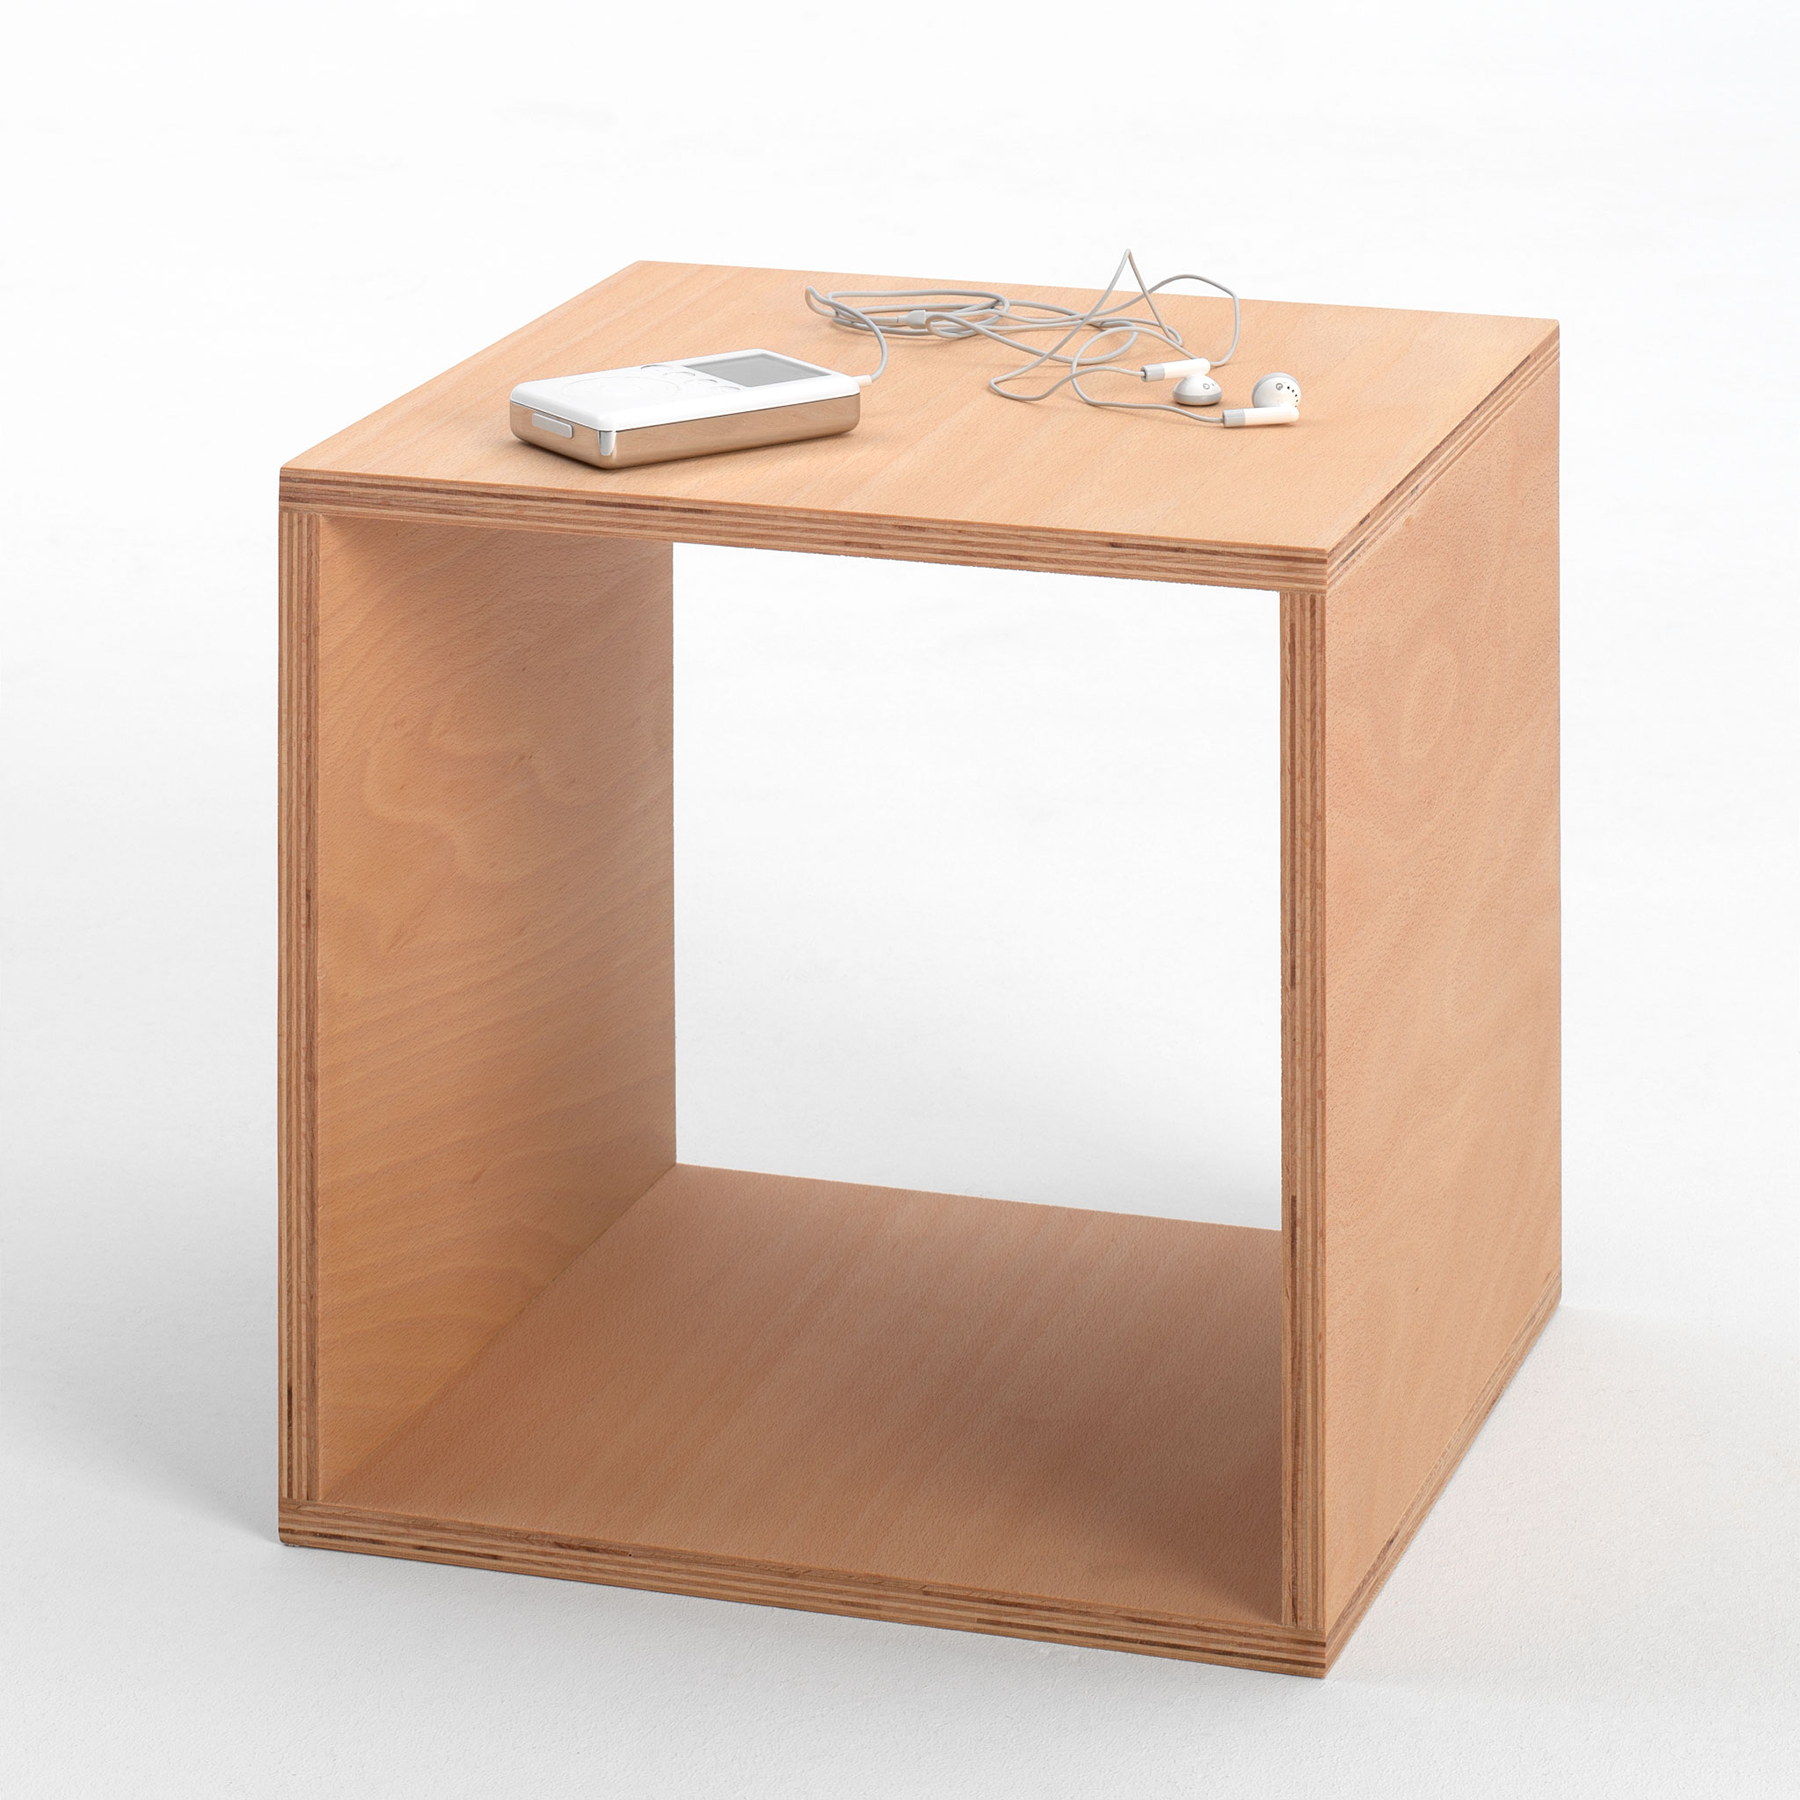 Tojo-cube in buche präsentiert im Onlineshop von KAQTU Design AG. Beistelltisch ist von Tojo